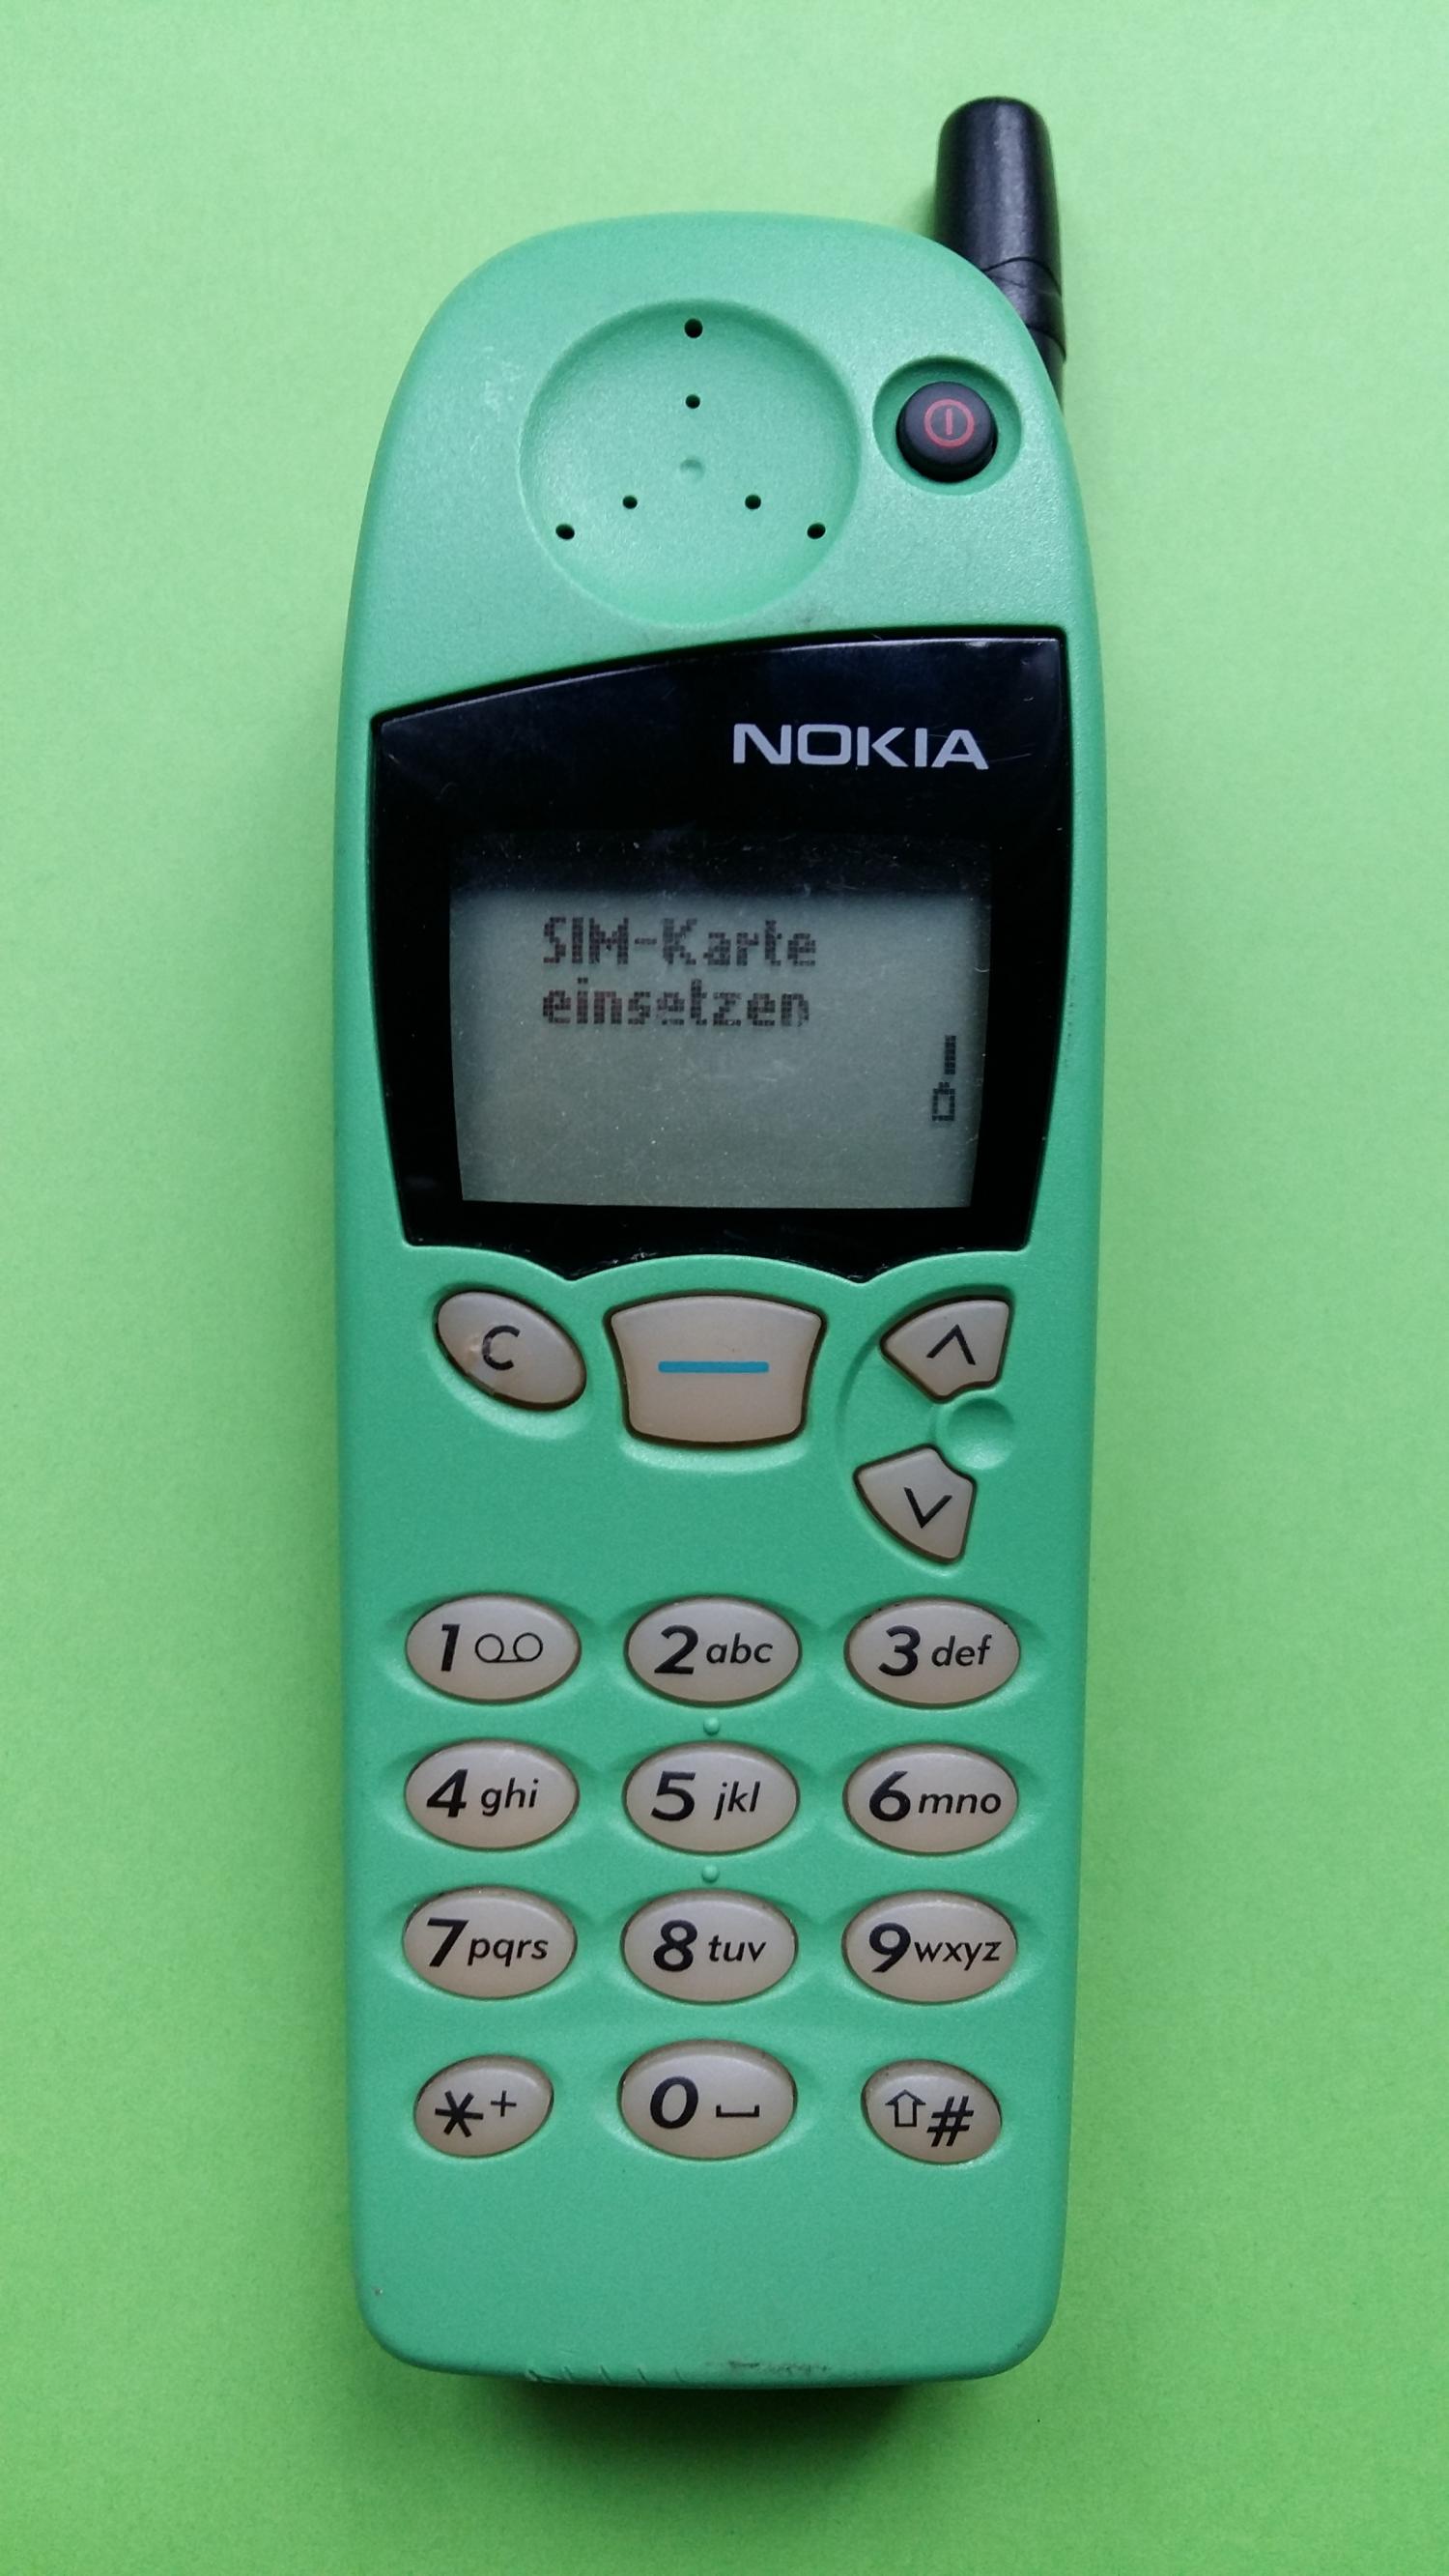 image-7304856-Nokia 5110 (12)1.jpg